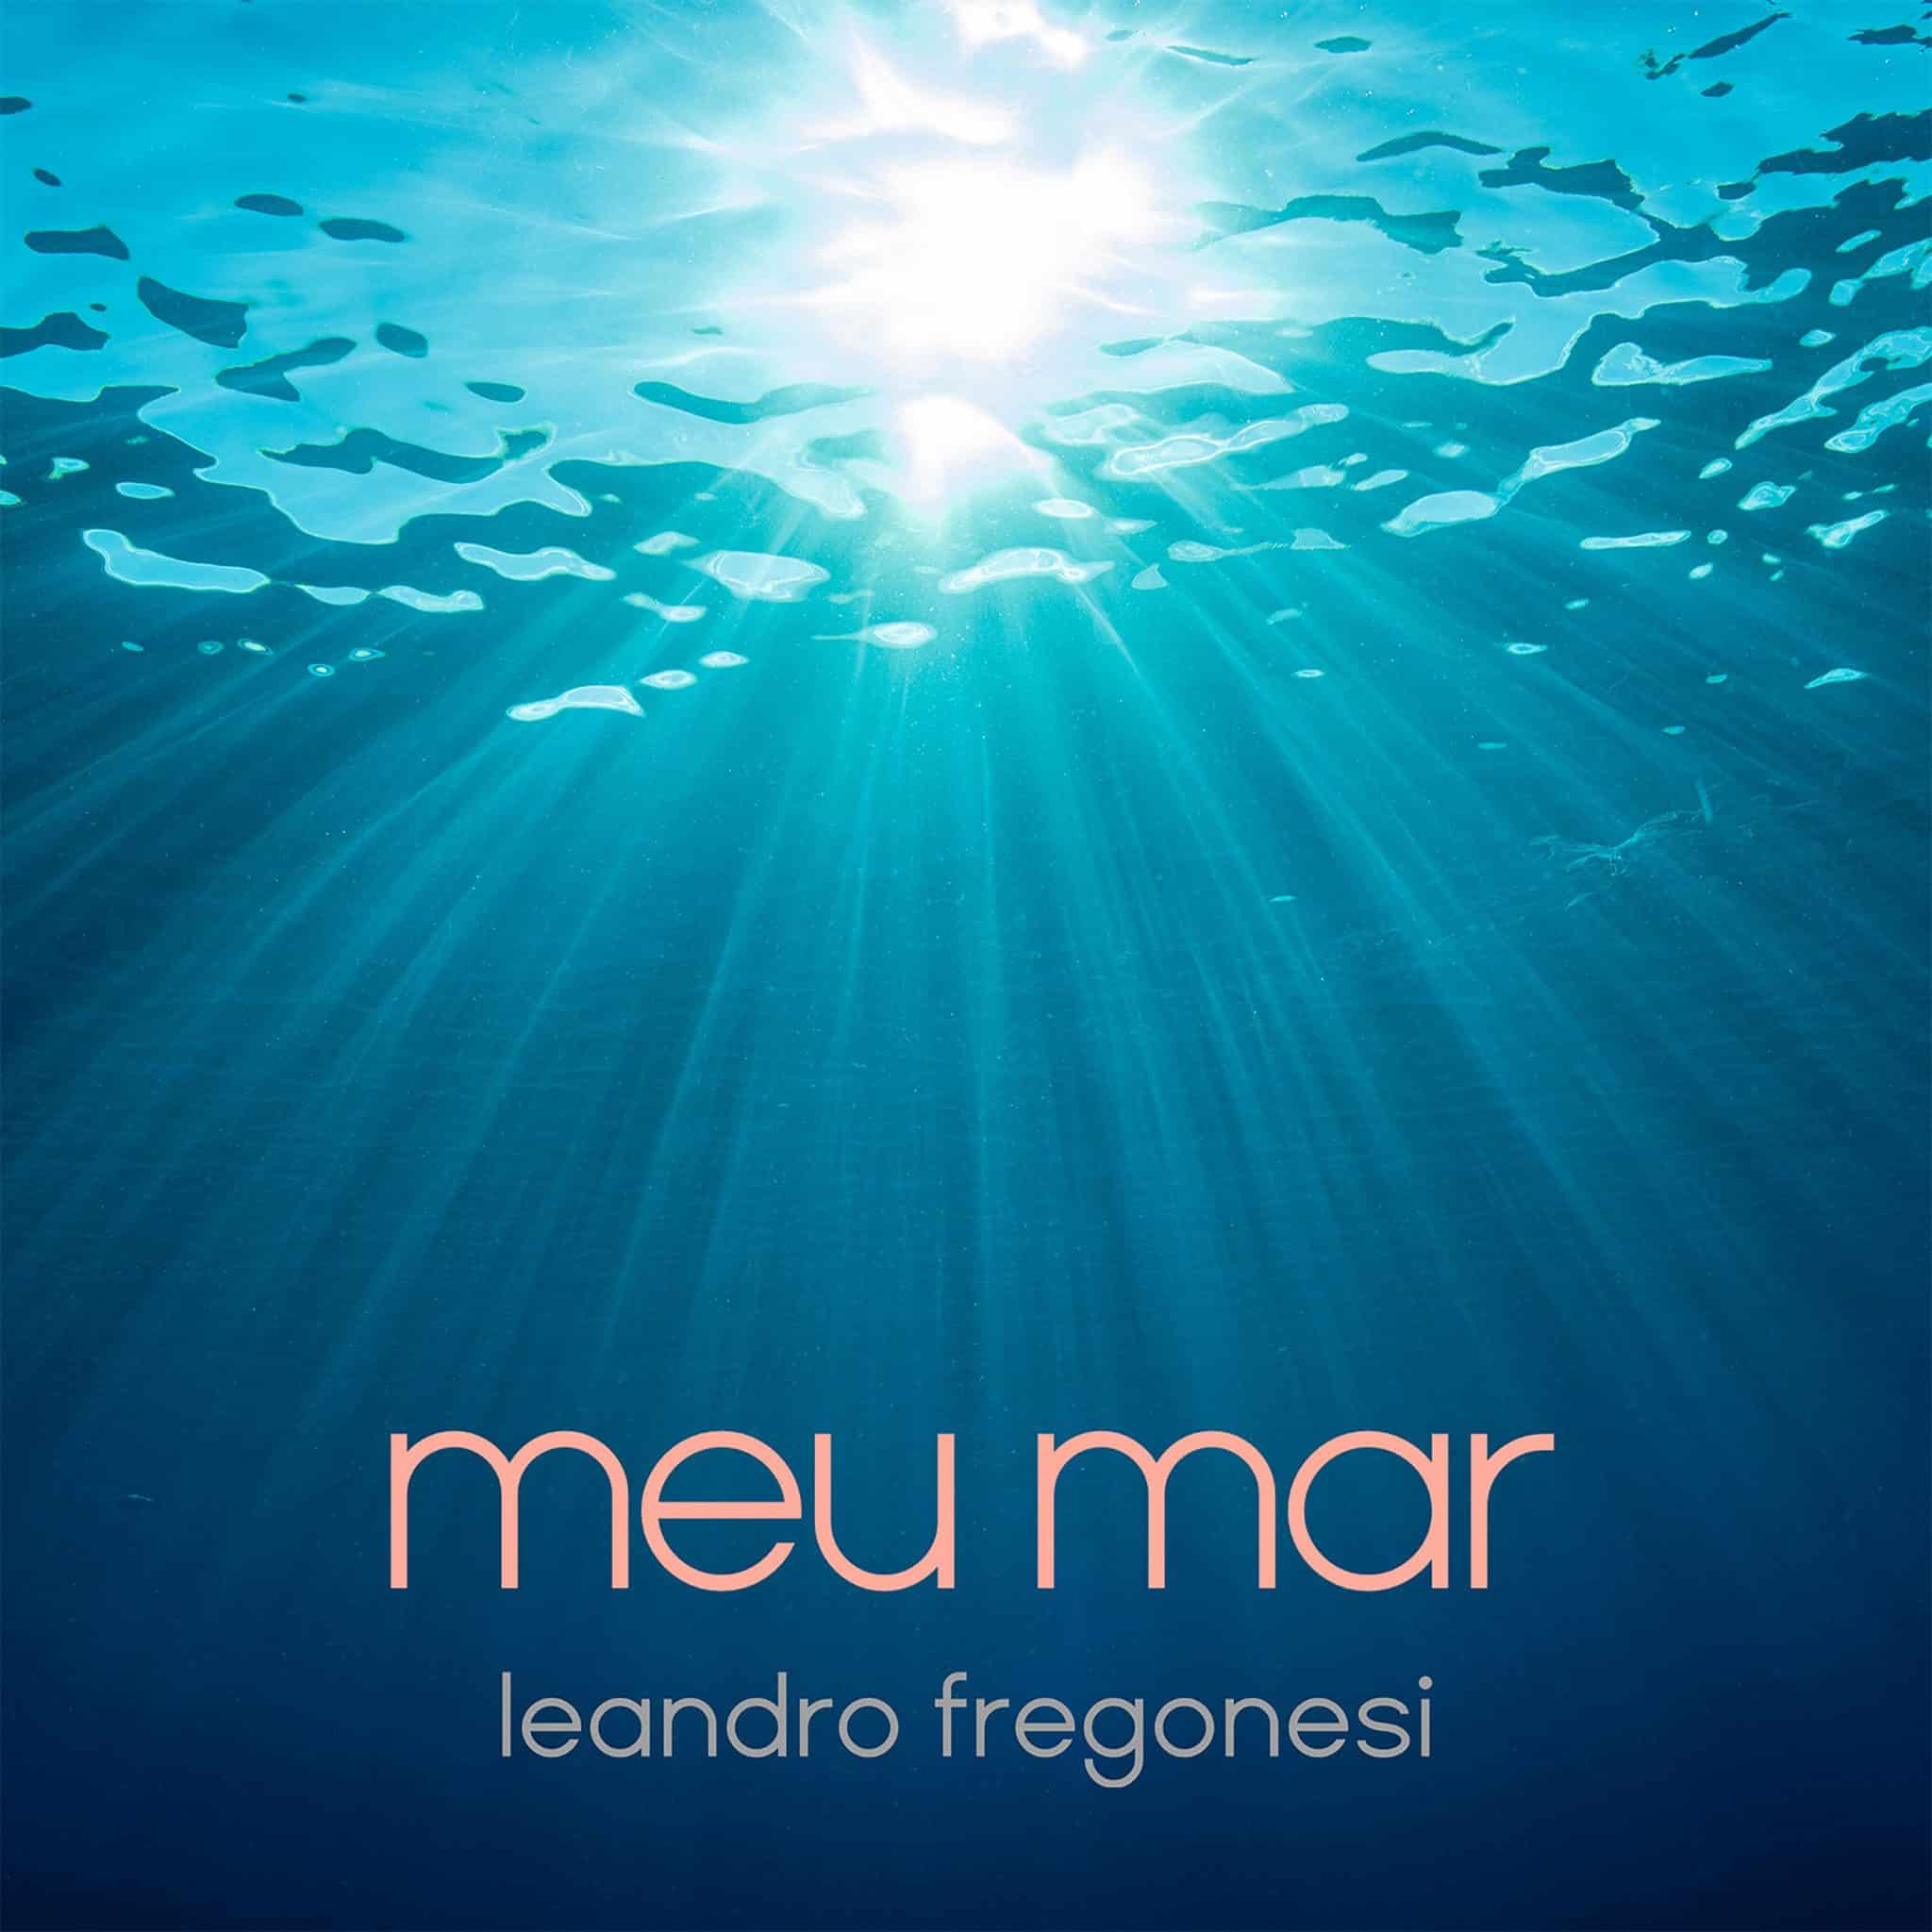 revistaprosaversoearte.com - Leandro Fregonesi lança single 'Meu Mar', em homenagem aos namorados